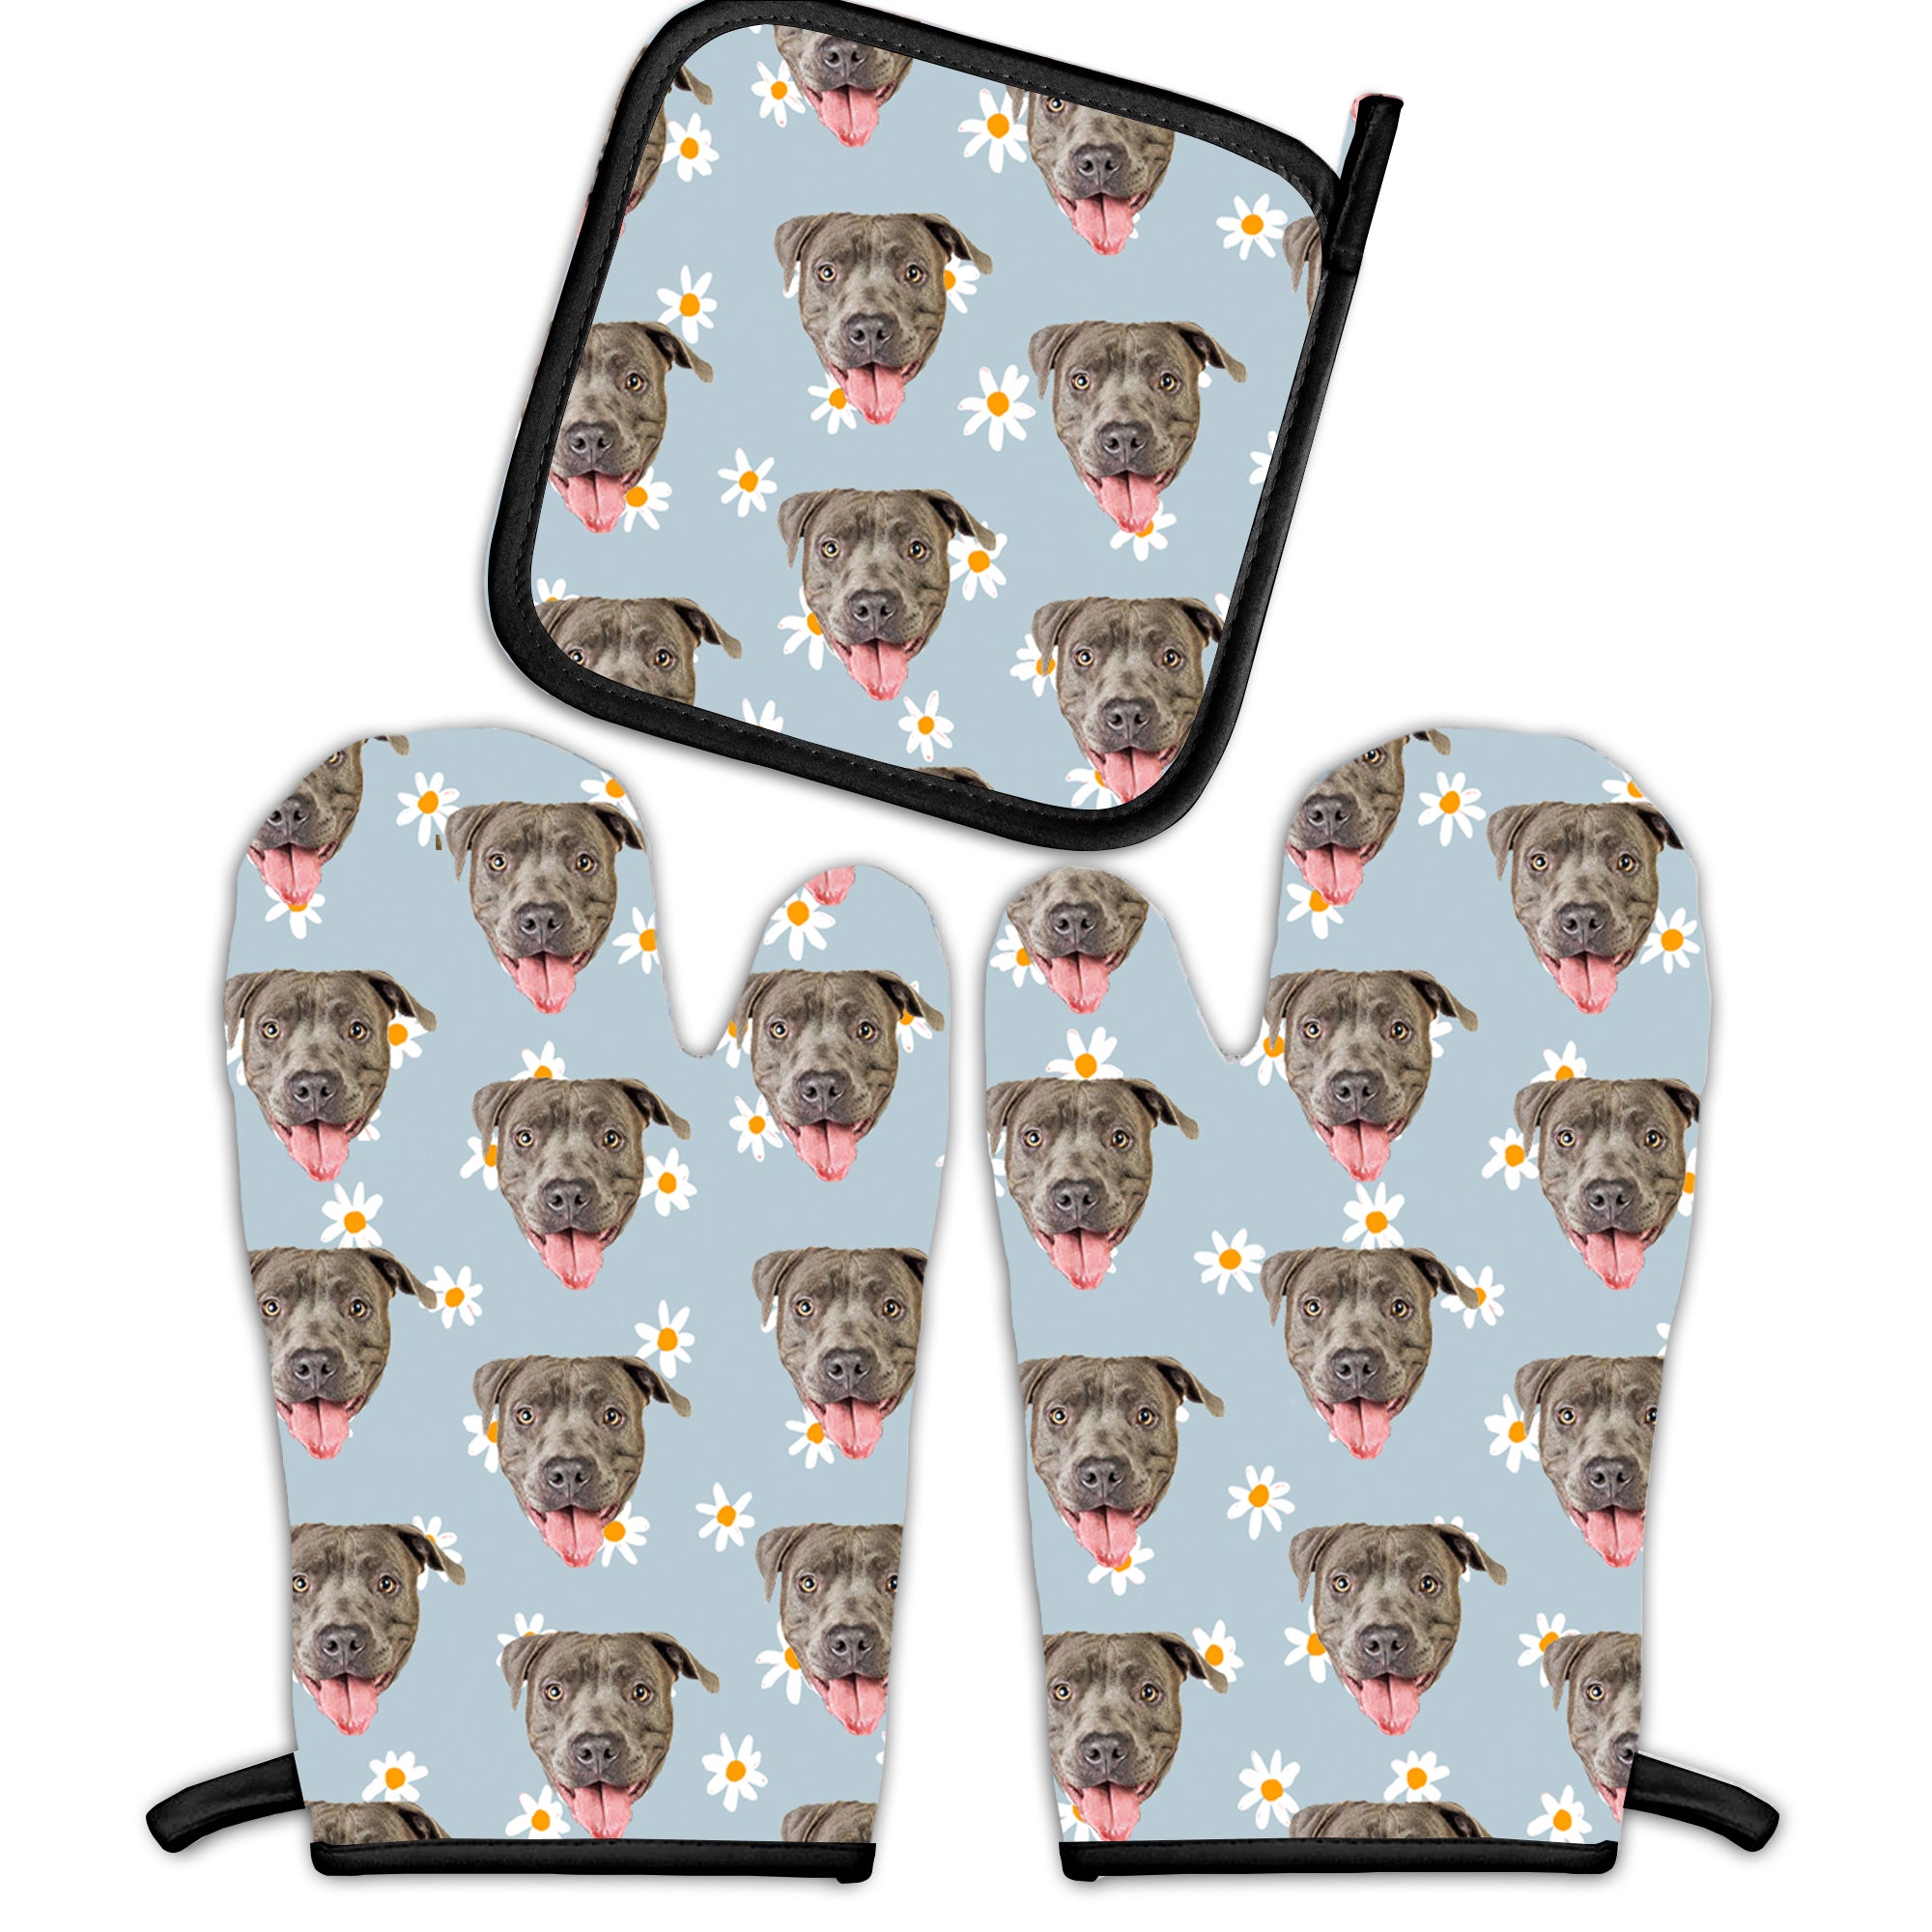 https://greatestcustom.com/cdn/shop/files/put-your-cute-dog-on-custom-oven-mitts-dog-lovers-gift-customized-dog-combo-2-mitt-pot-holder-christmas-gift-for-dog-mom.jpg?v=1693880378